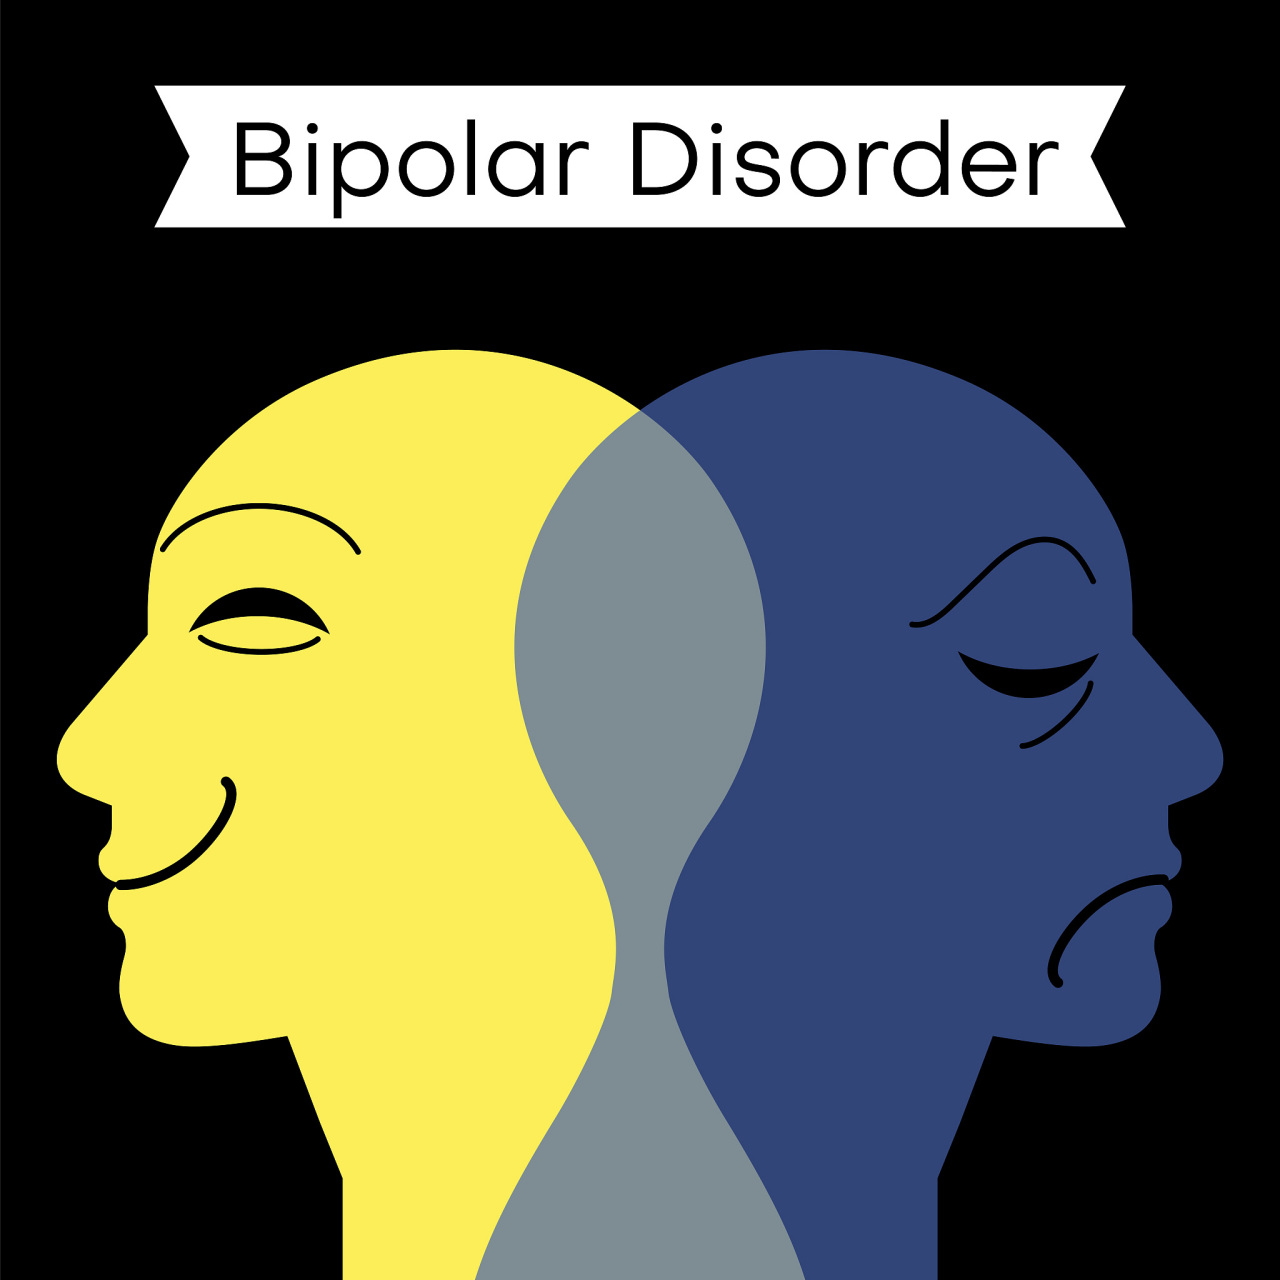 bipolar头像图片